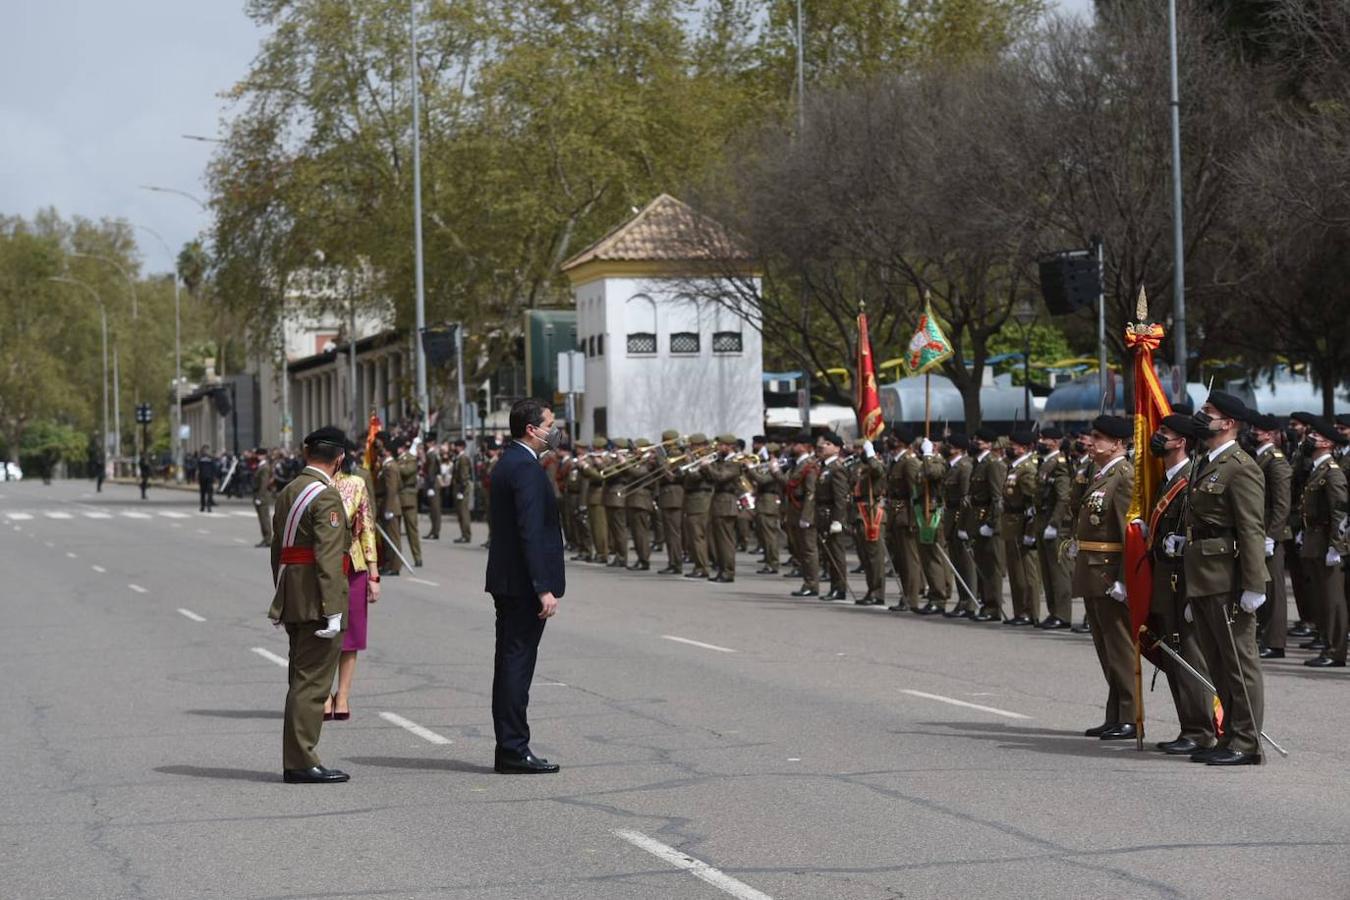 La solemne jura civil de bandera en Córdoba, en imágenes